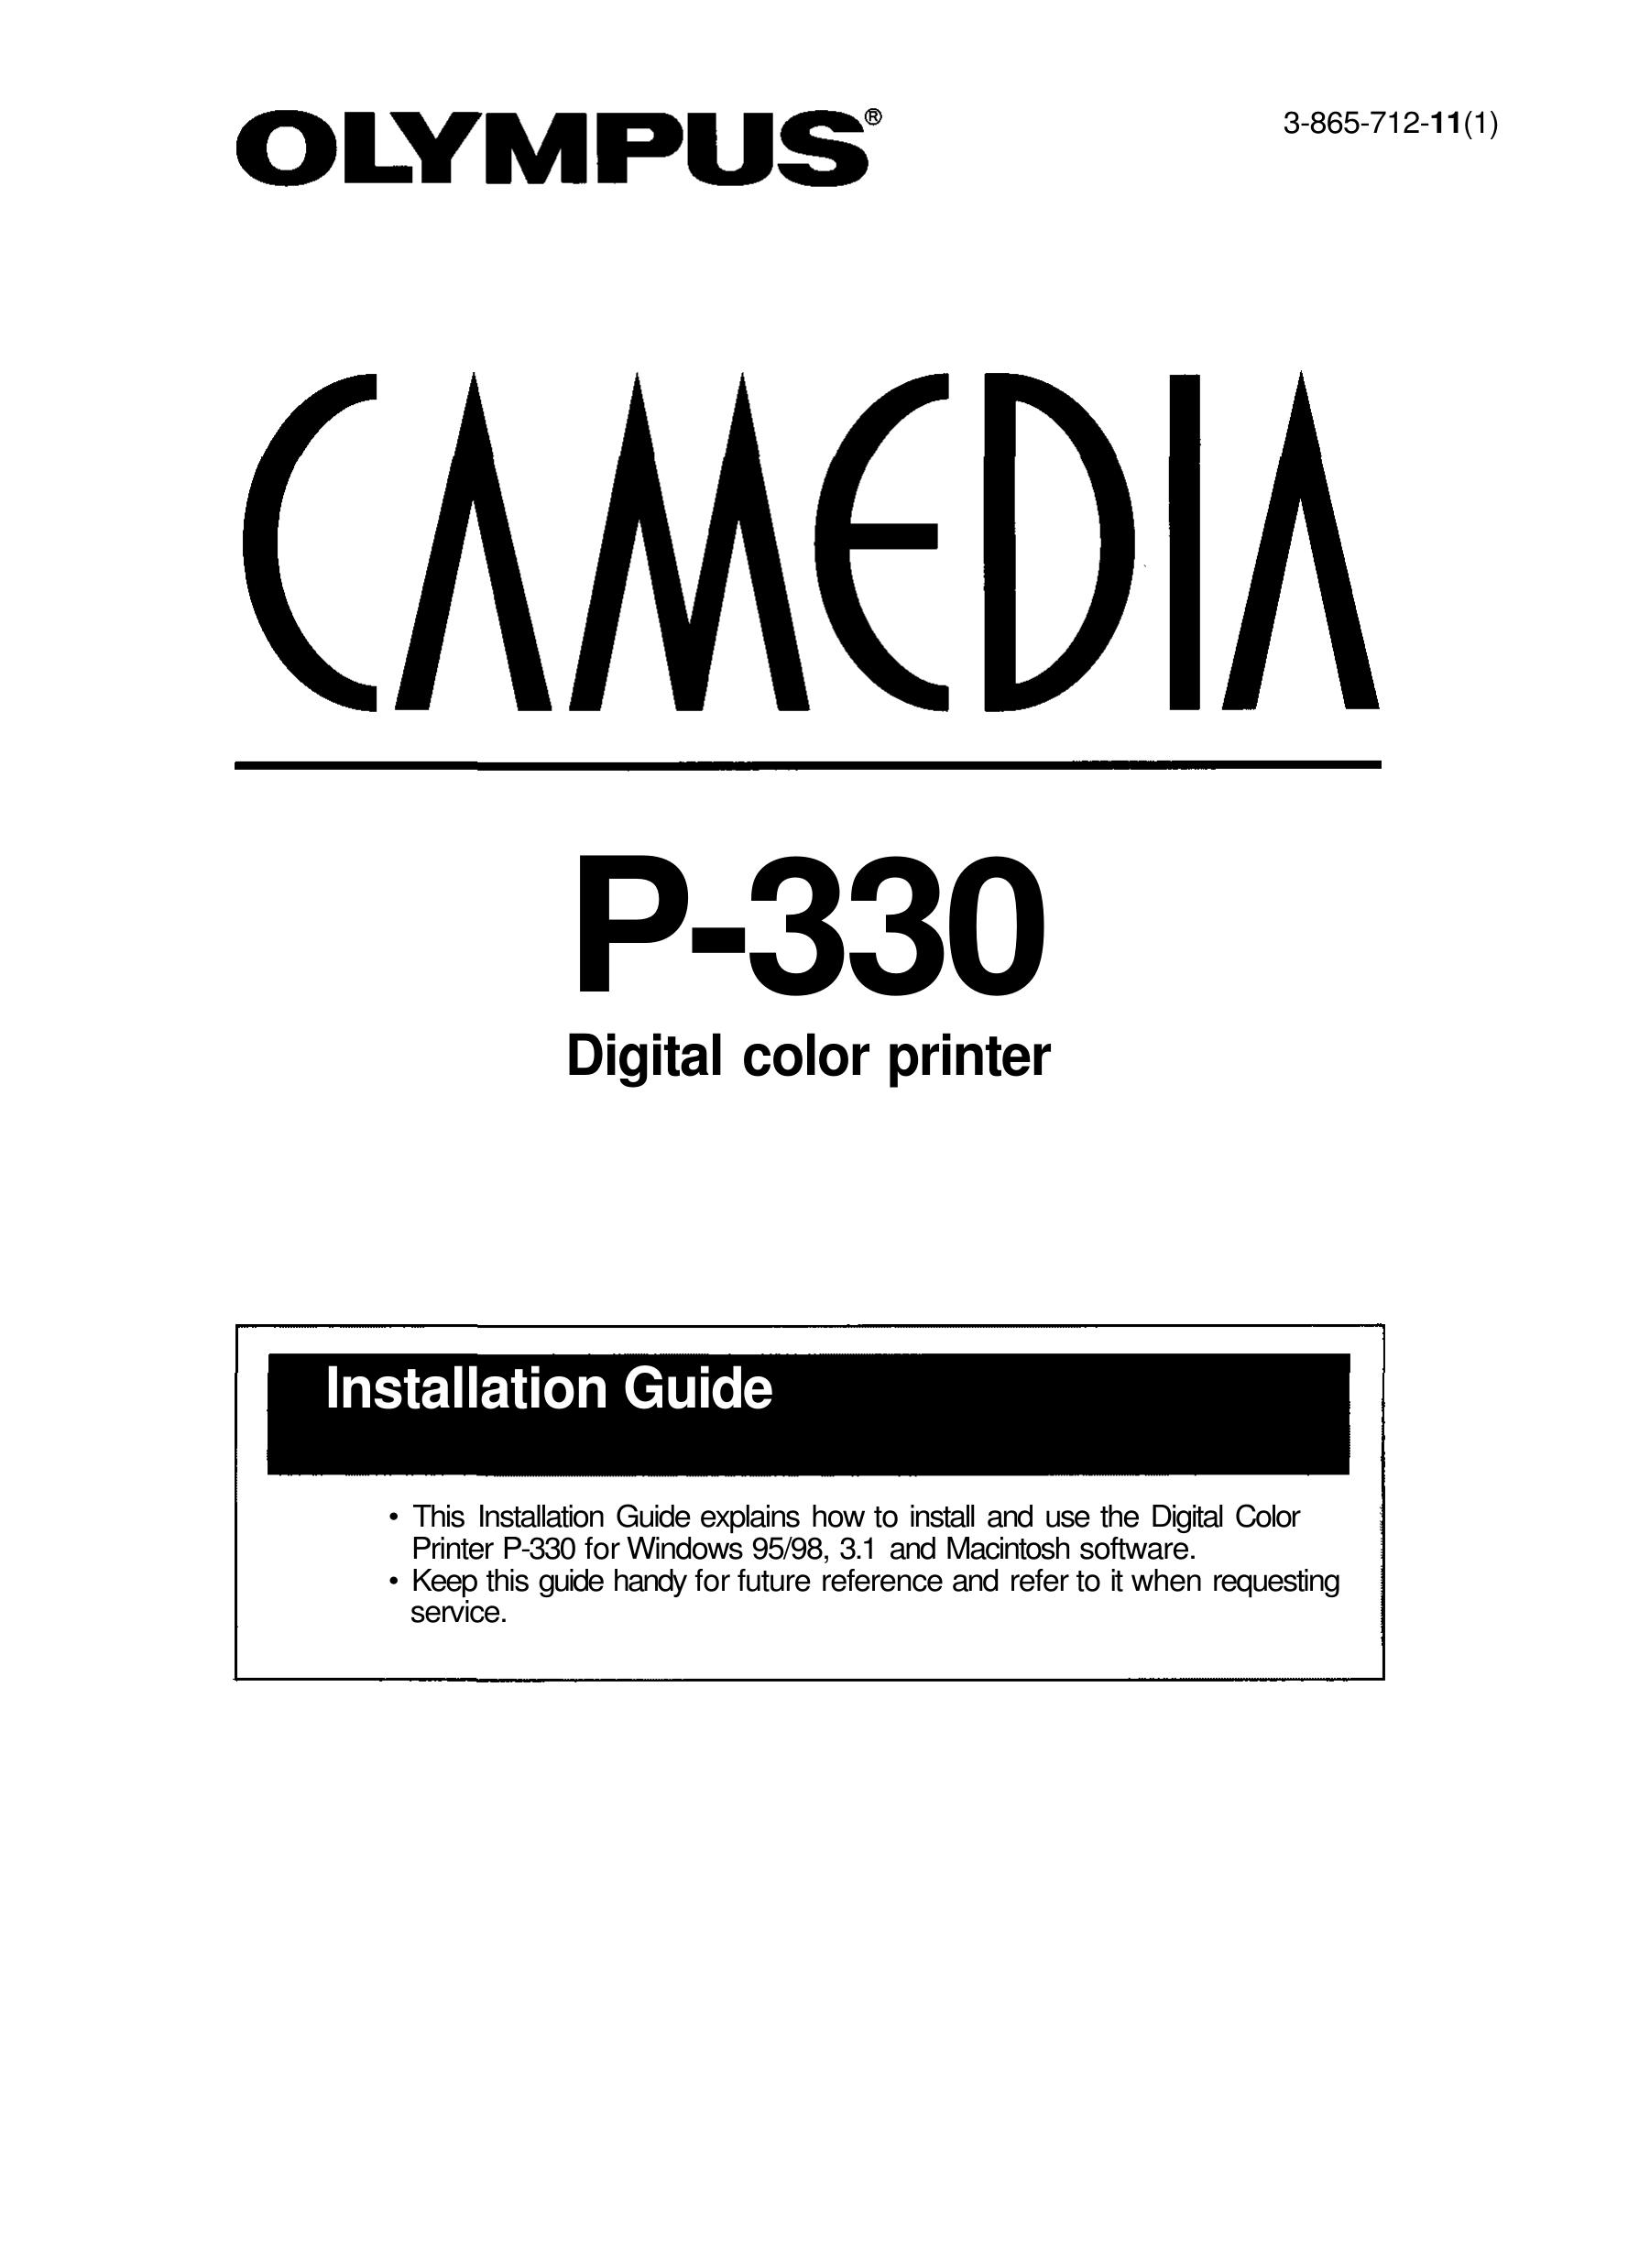 Olympus P-330 Photo Printer User Manual